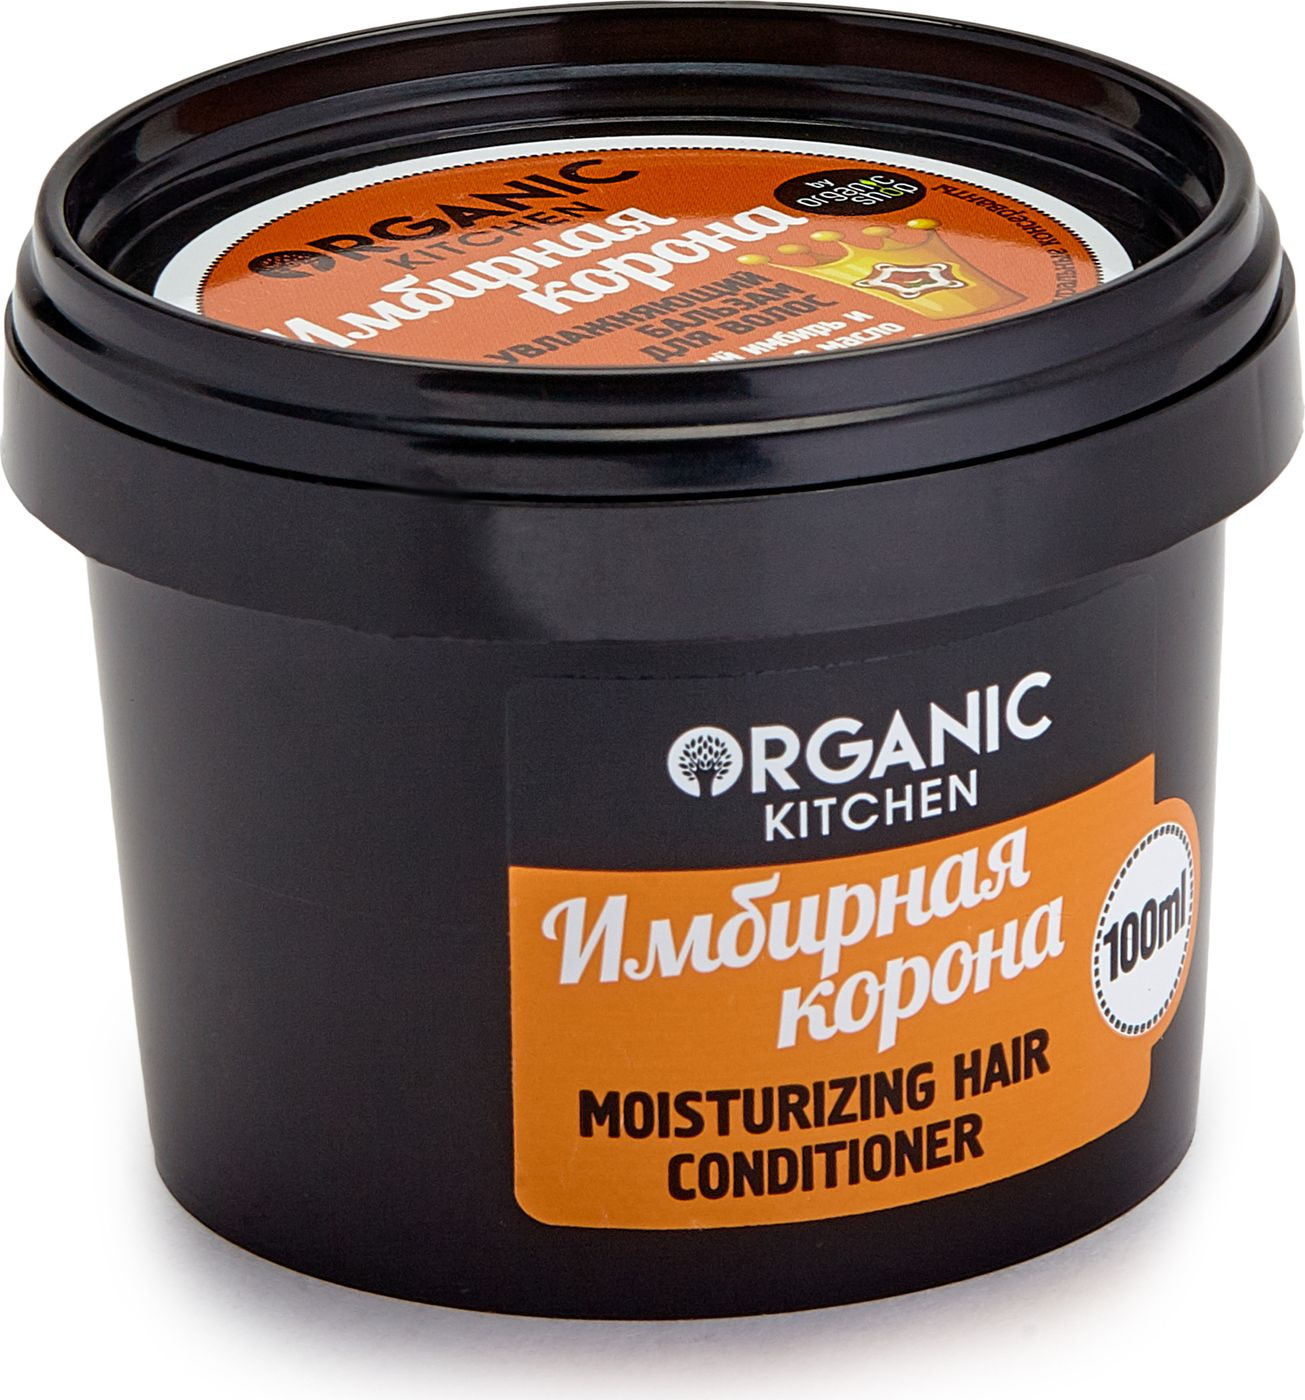 фото Органик Шоп Китчен Увлажняющий бальзам для волос "Имбирная корона" 100мл Organic shop